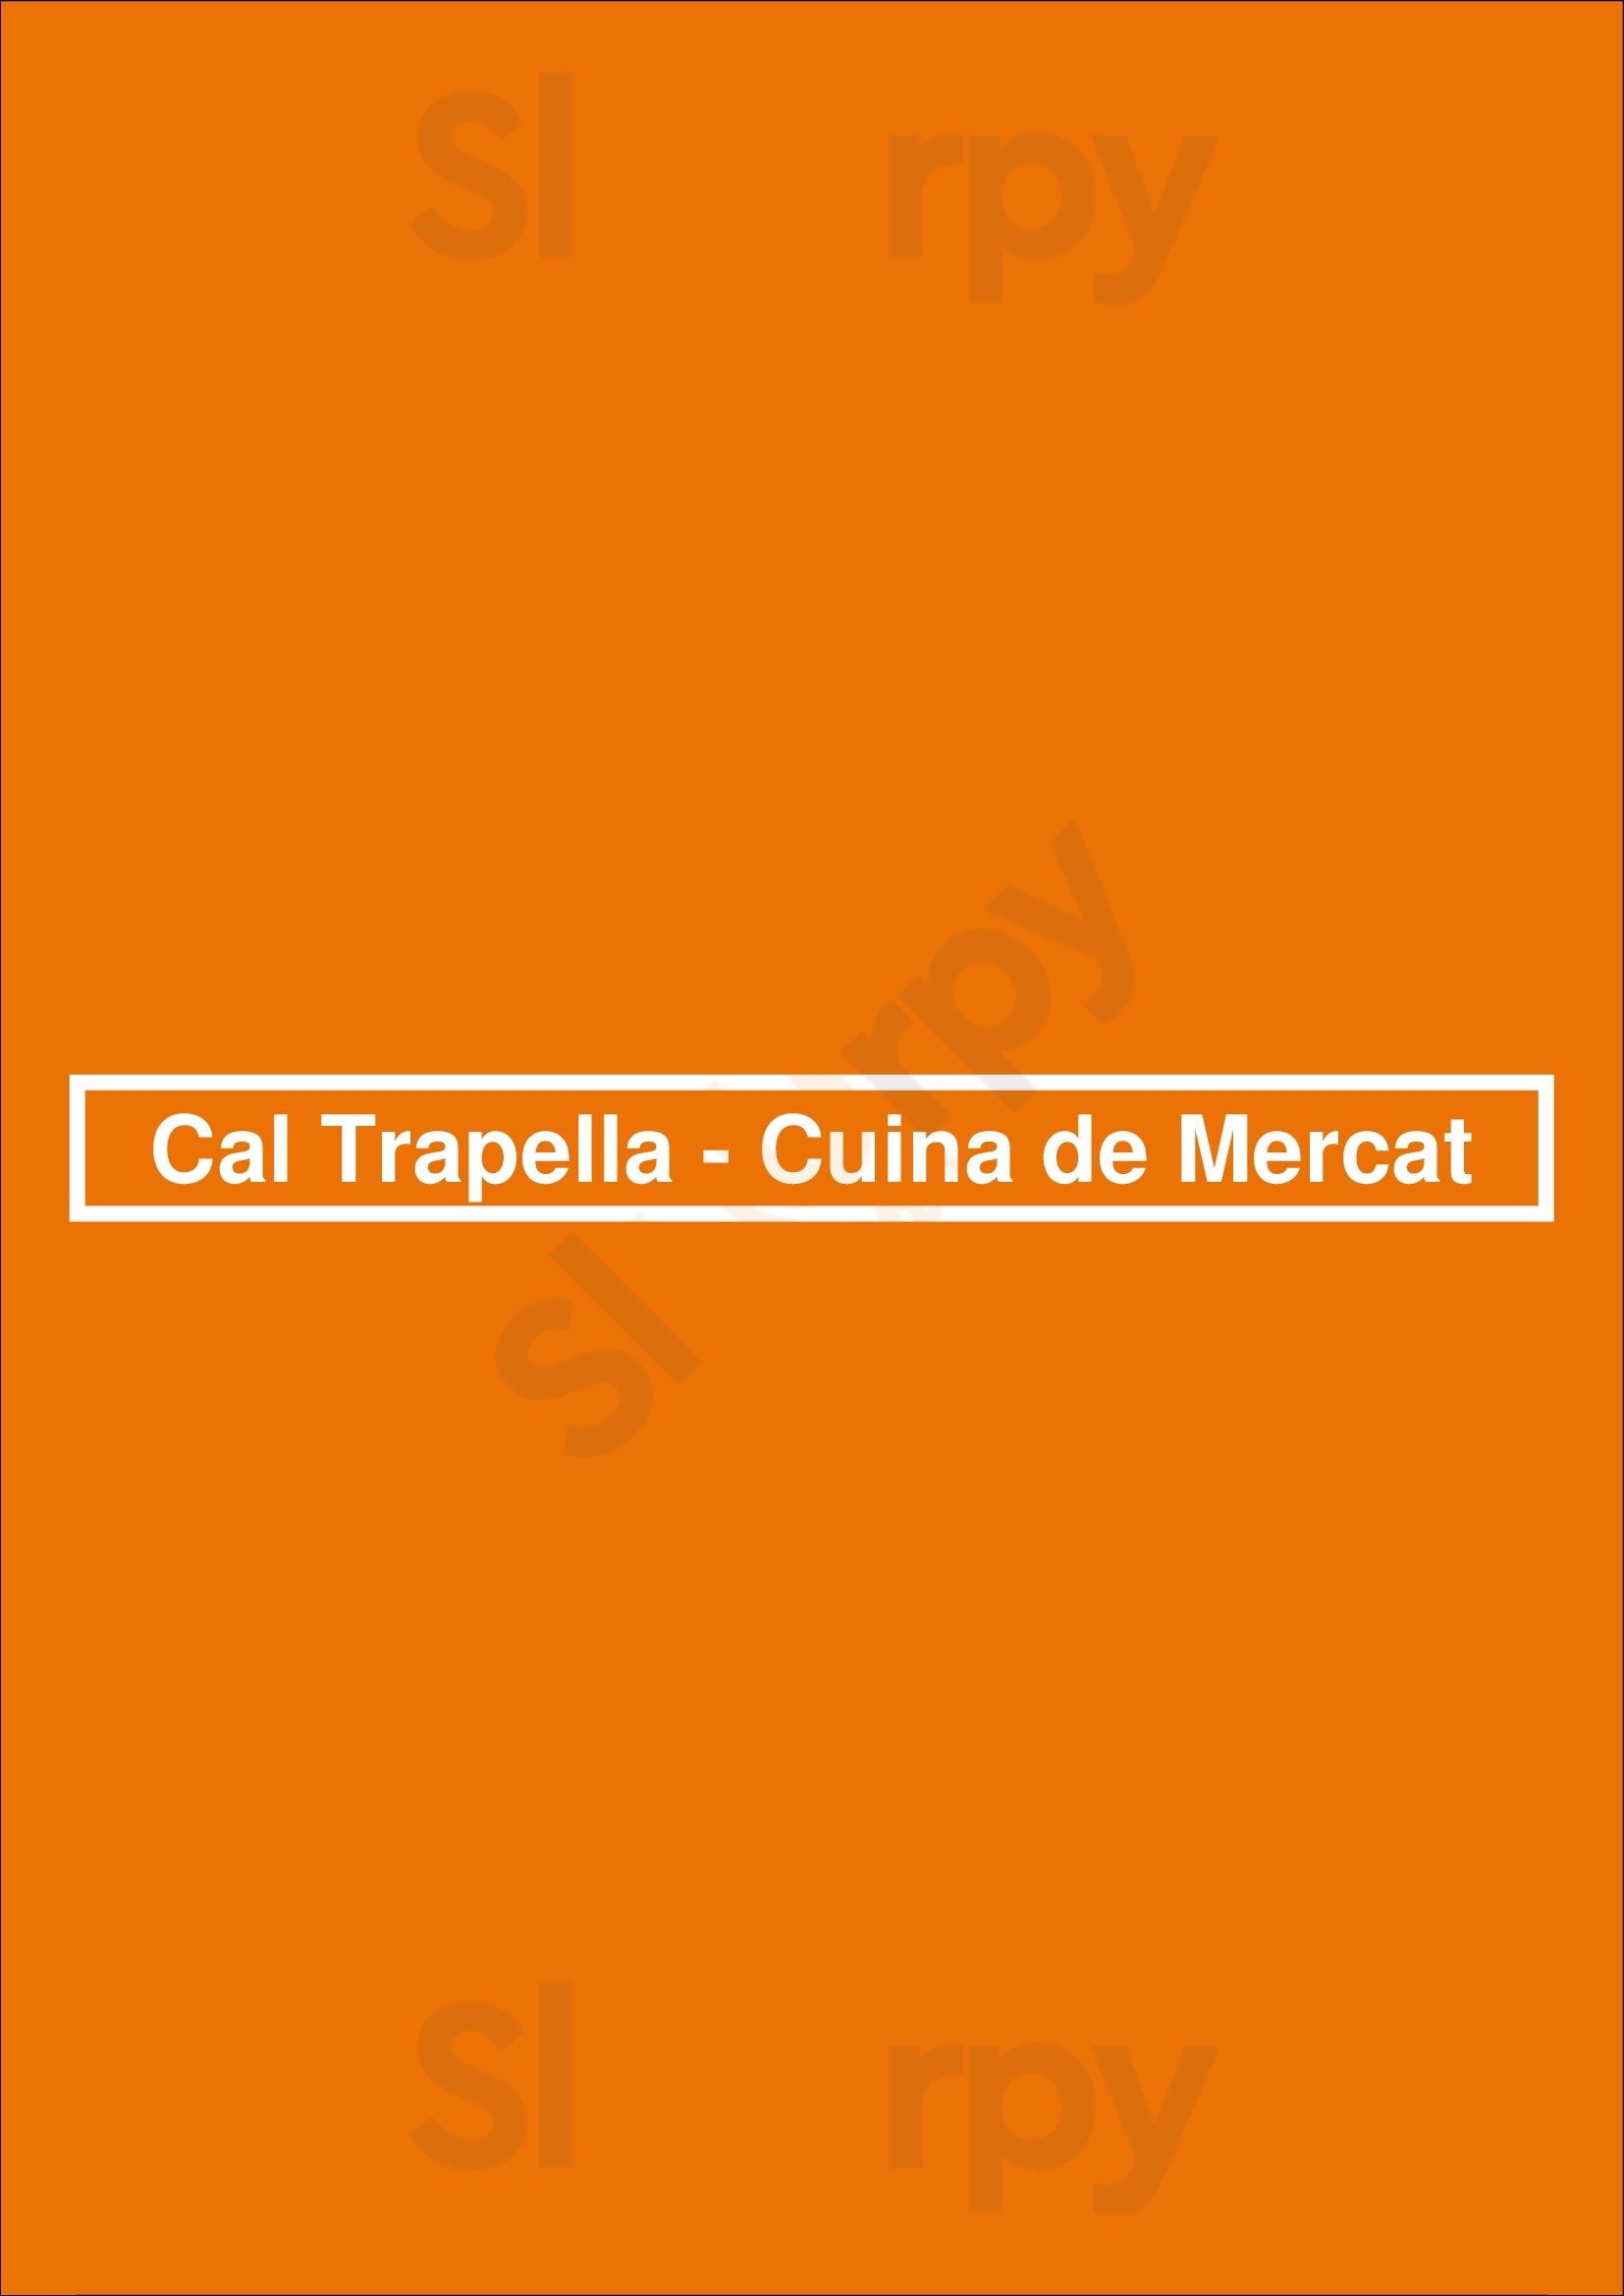 Cal Trapella - Cuina De Mercat Barcelona Menu - 1